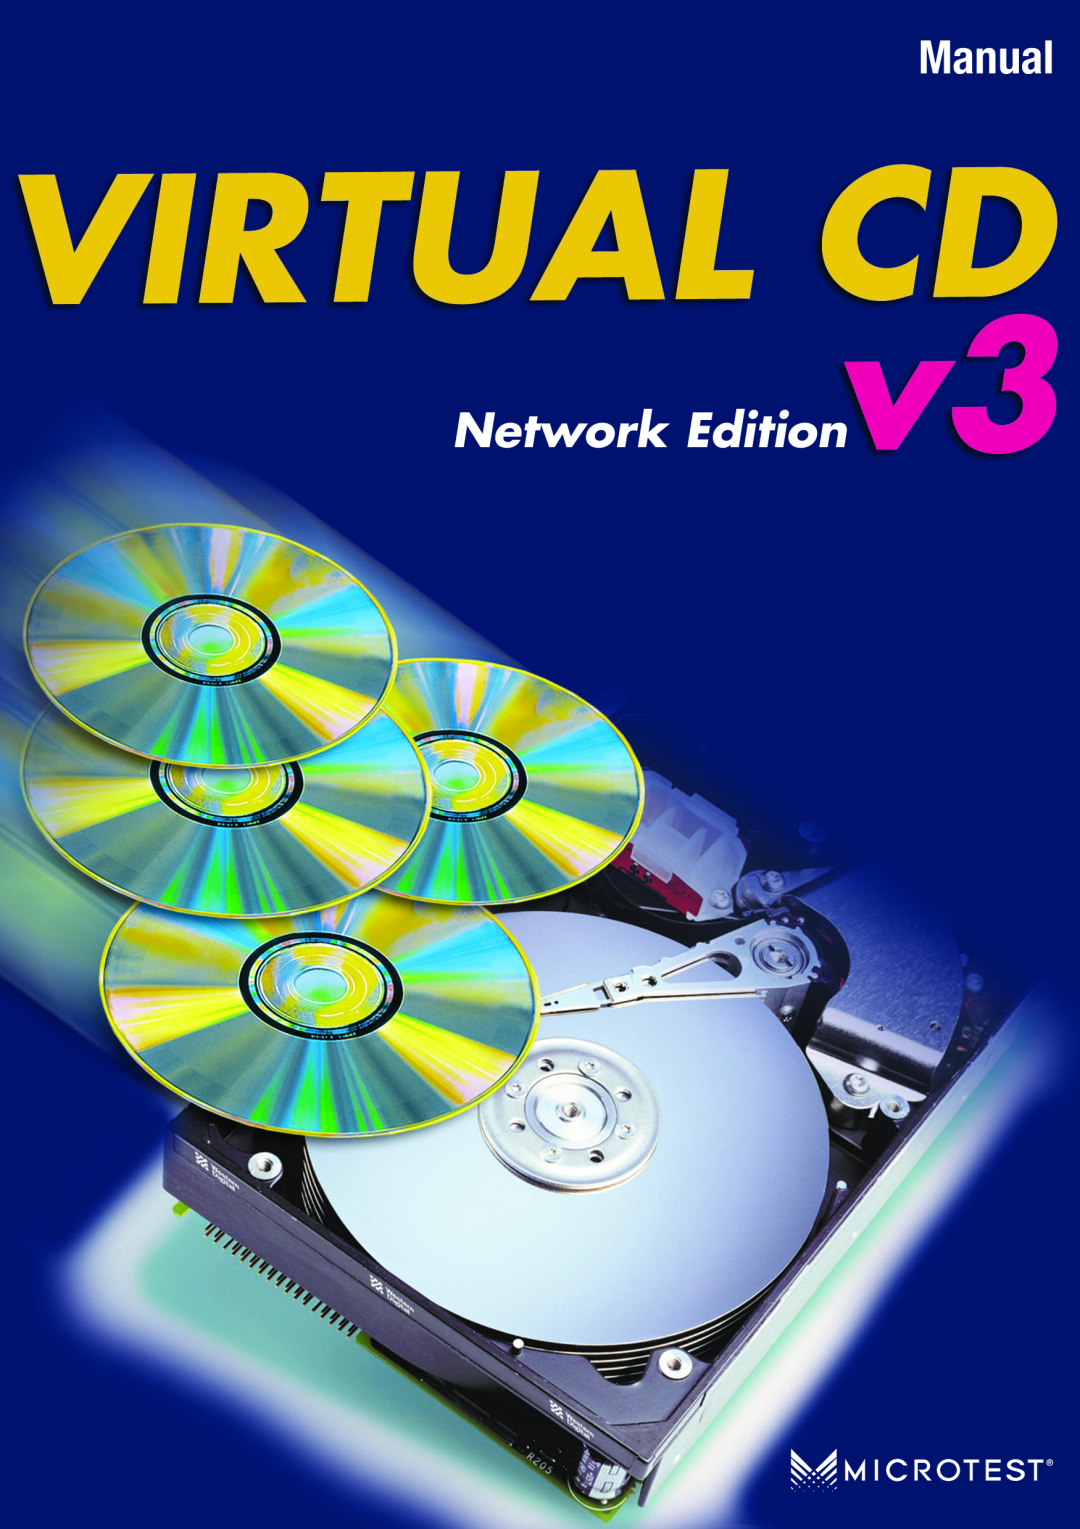 Microtest VIRTUAL CD v3 manual Manual, Network Edition 